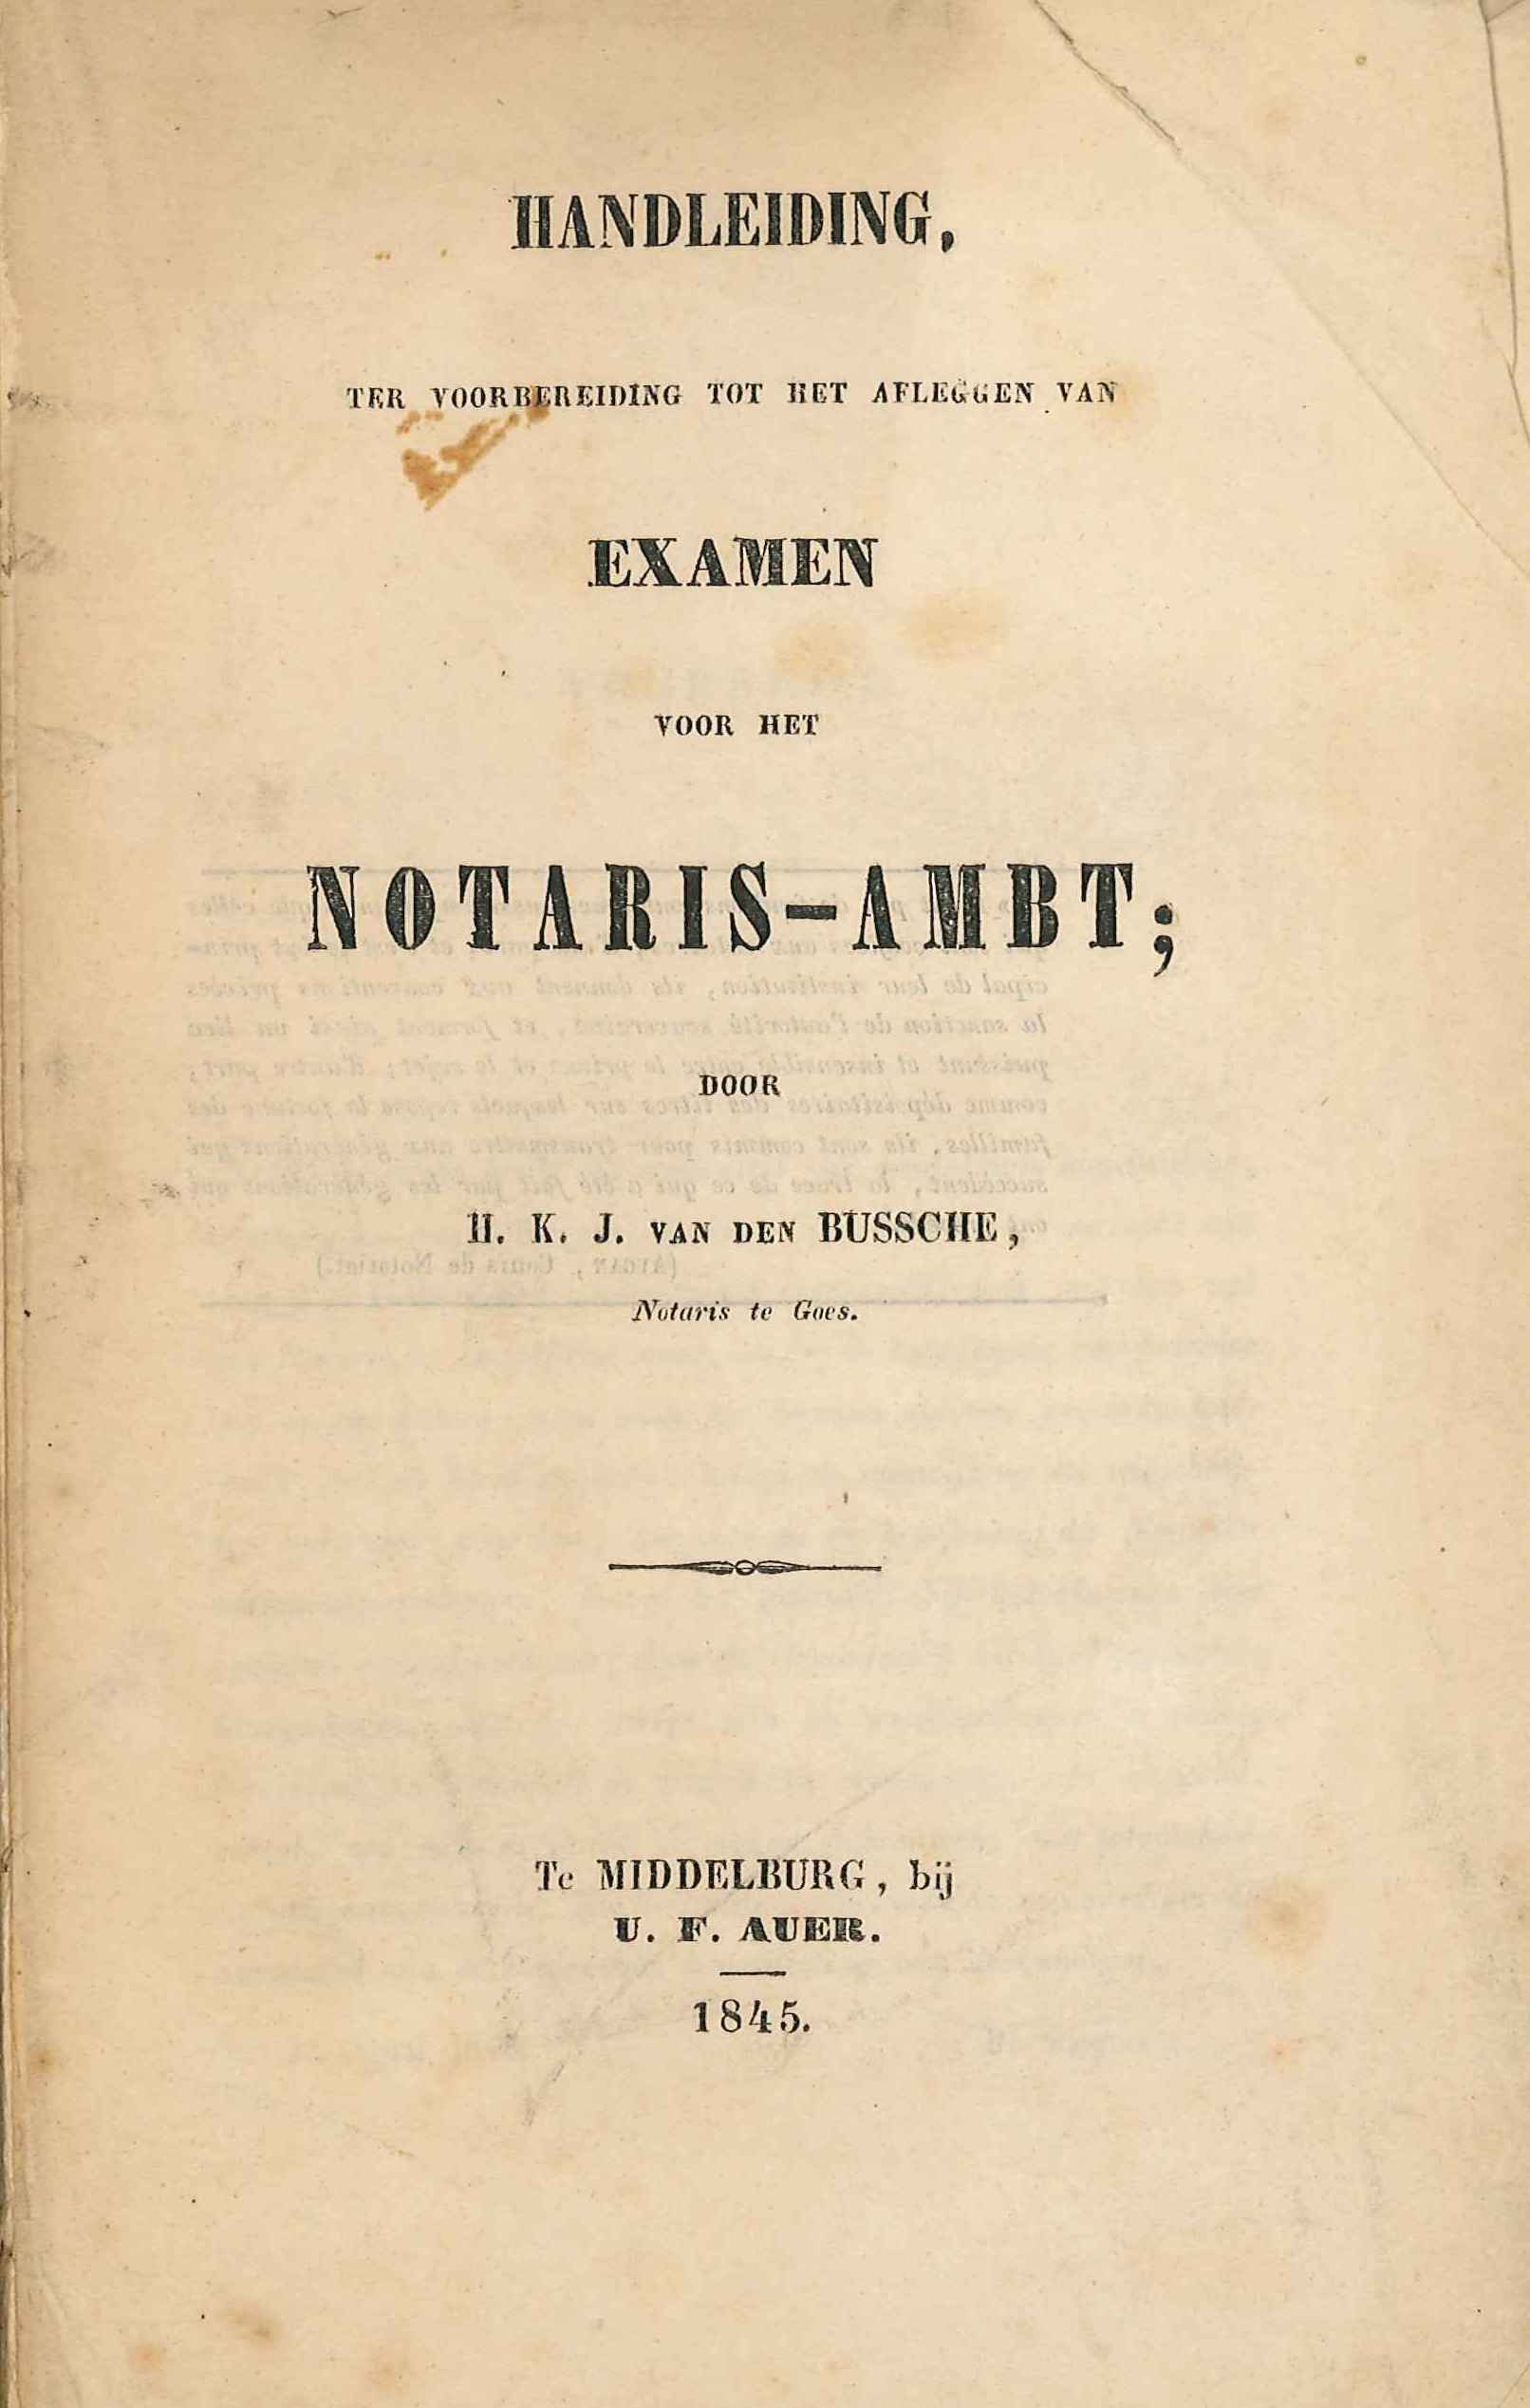 Handleiding voor het notarisambt, H.K.J. van den Bussche. Middelburg 1845. GAG.HB.